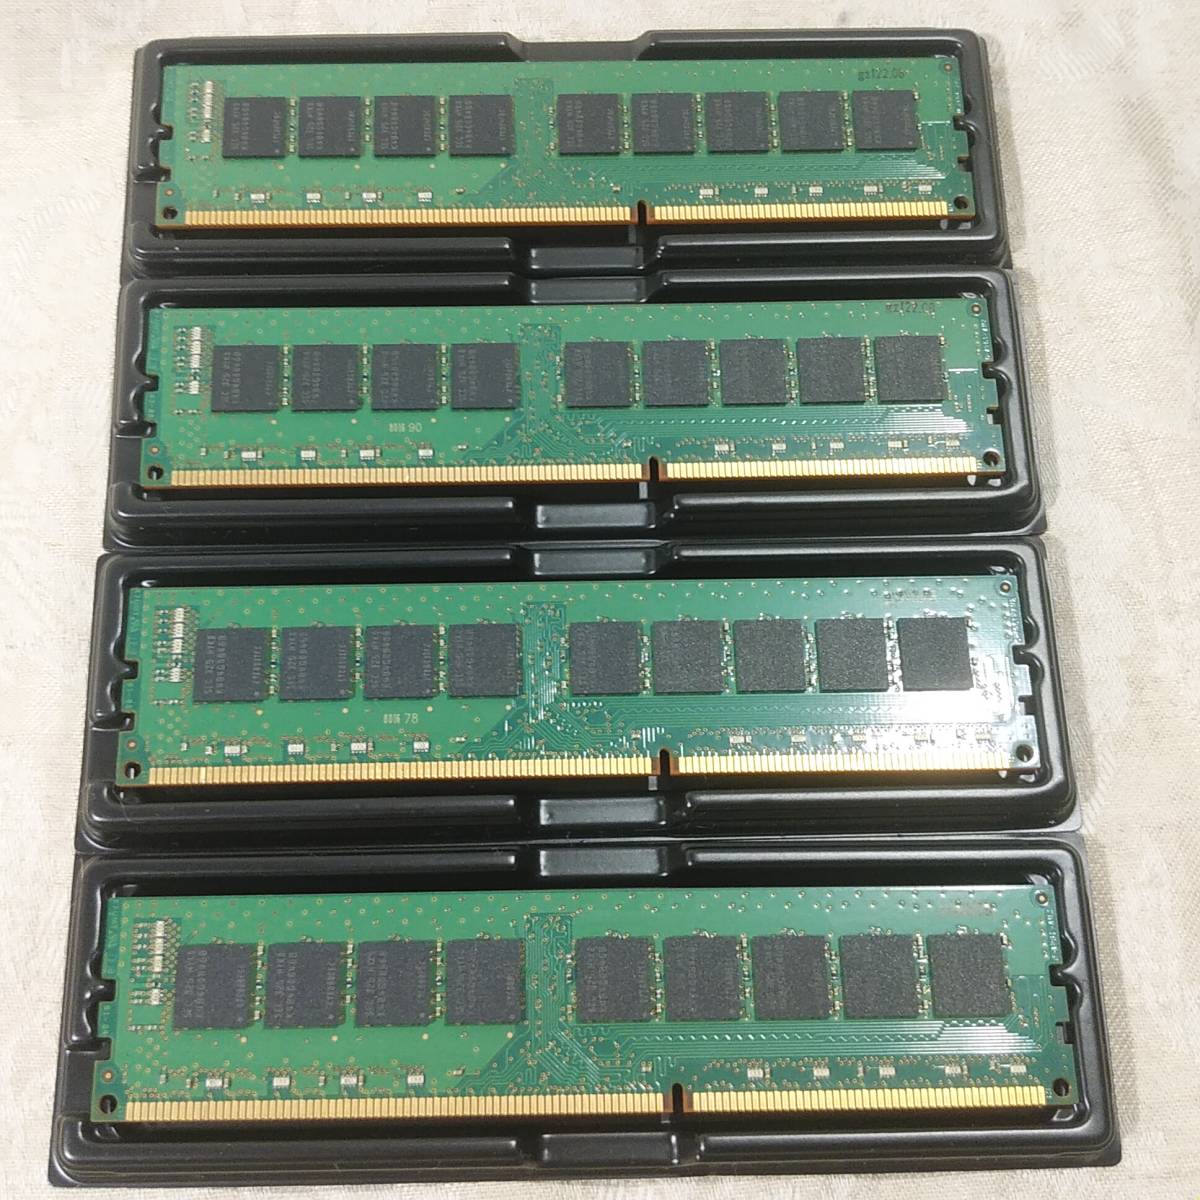 新品 SAMSUNG サムスン 32GBメモリ(8GB×4) DDR3L 1600MHz PC3L-12800E 1.35-1.5V ECCサーバーメモリーRAM 送料無料